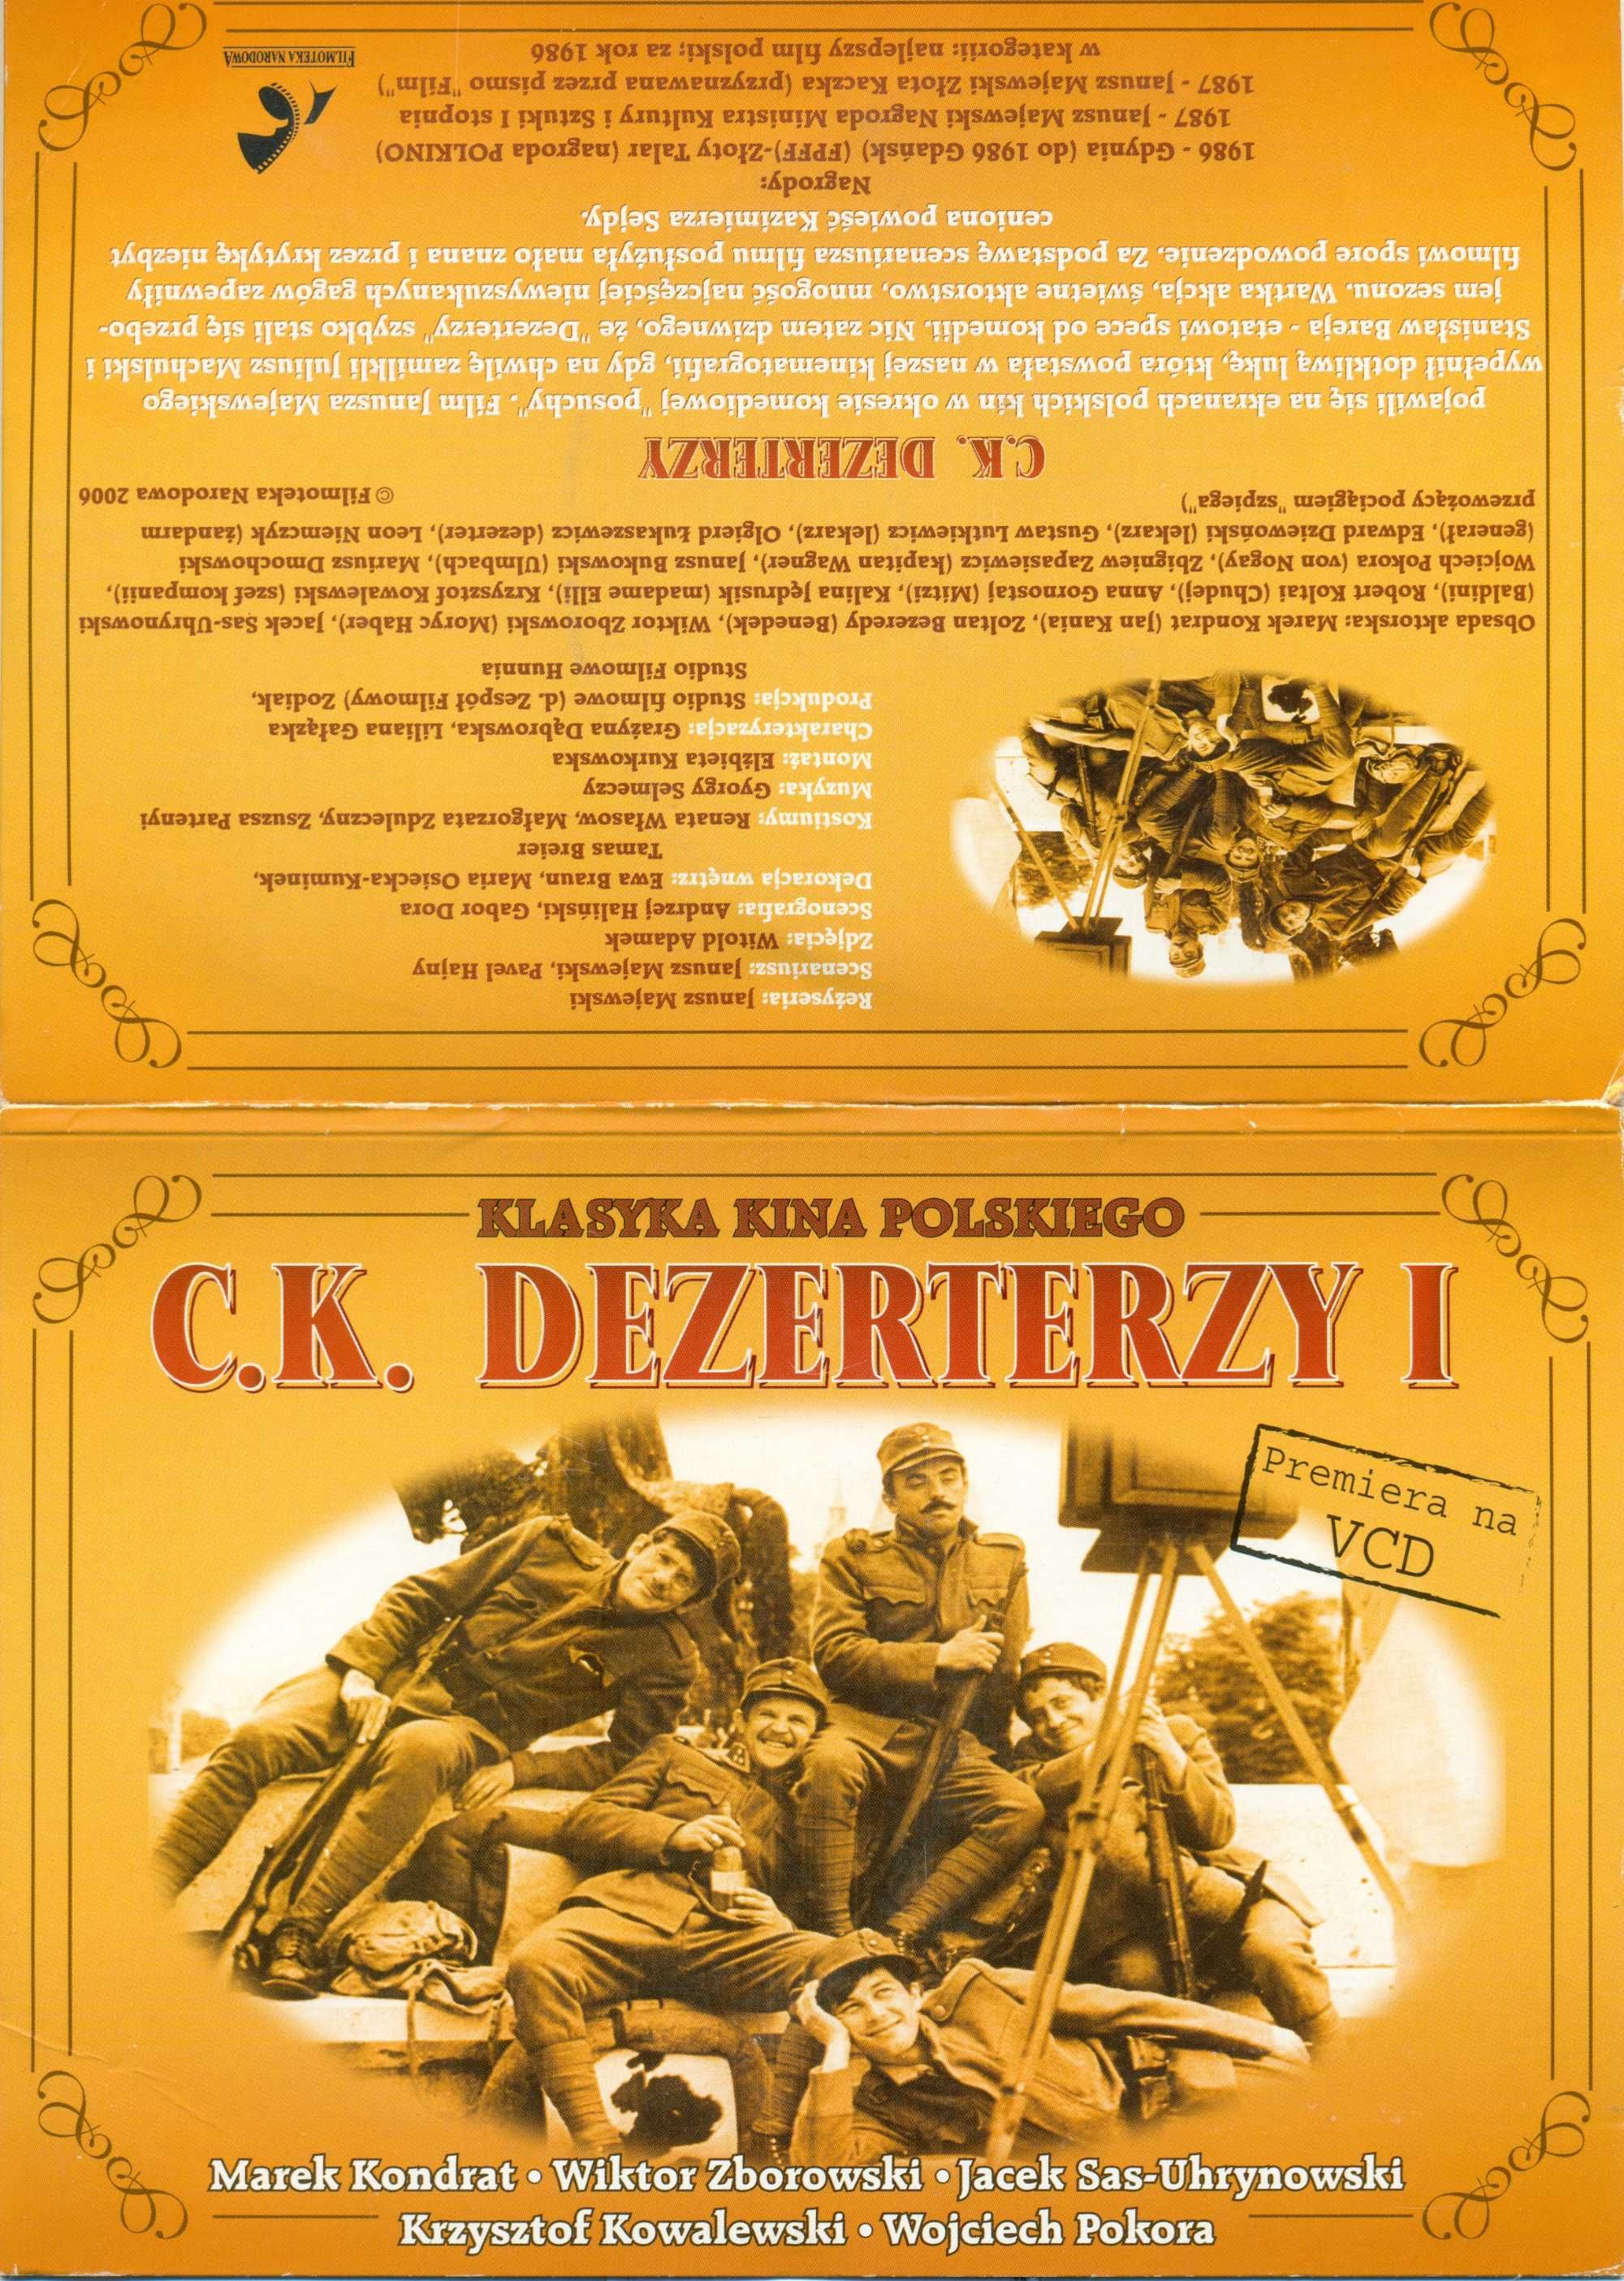 C.K. Dezerterzy format VCD na dwóch płytach!!!